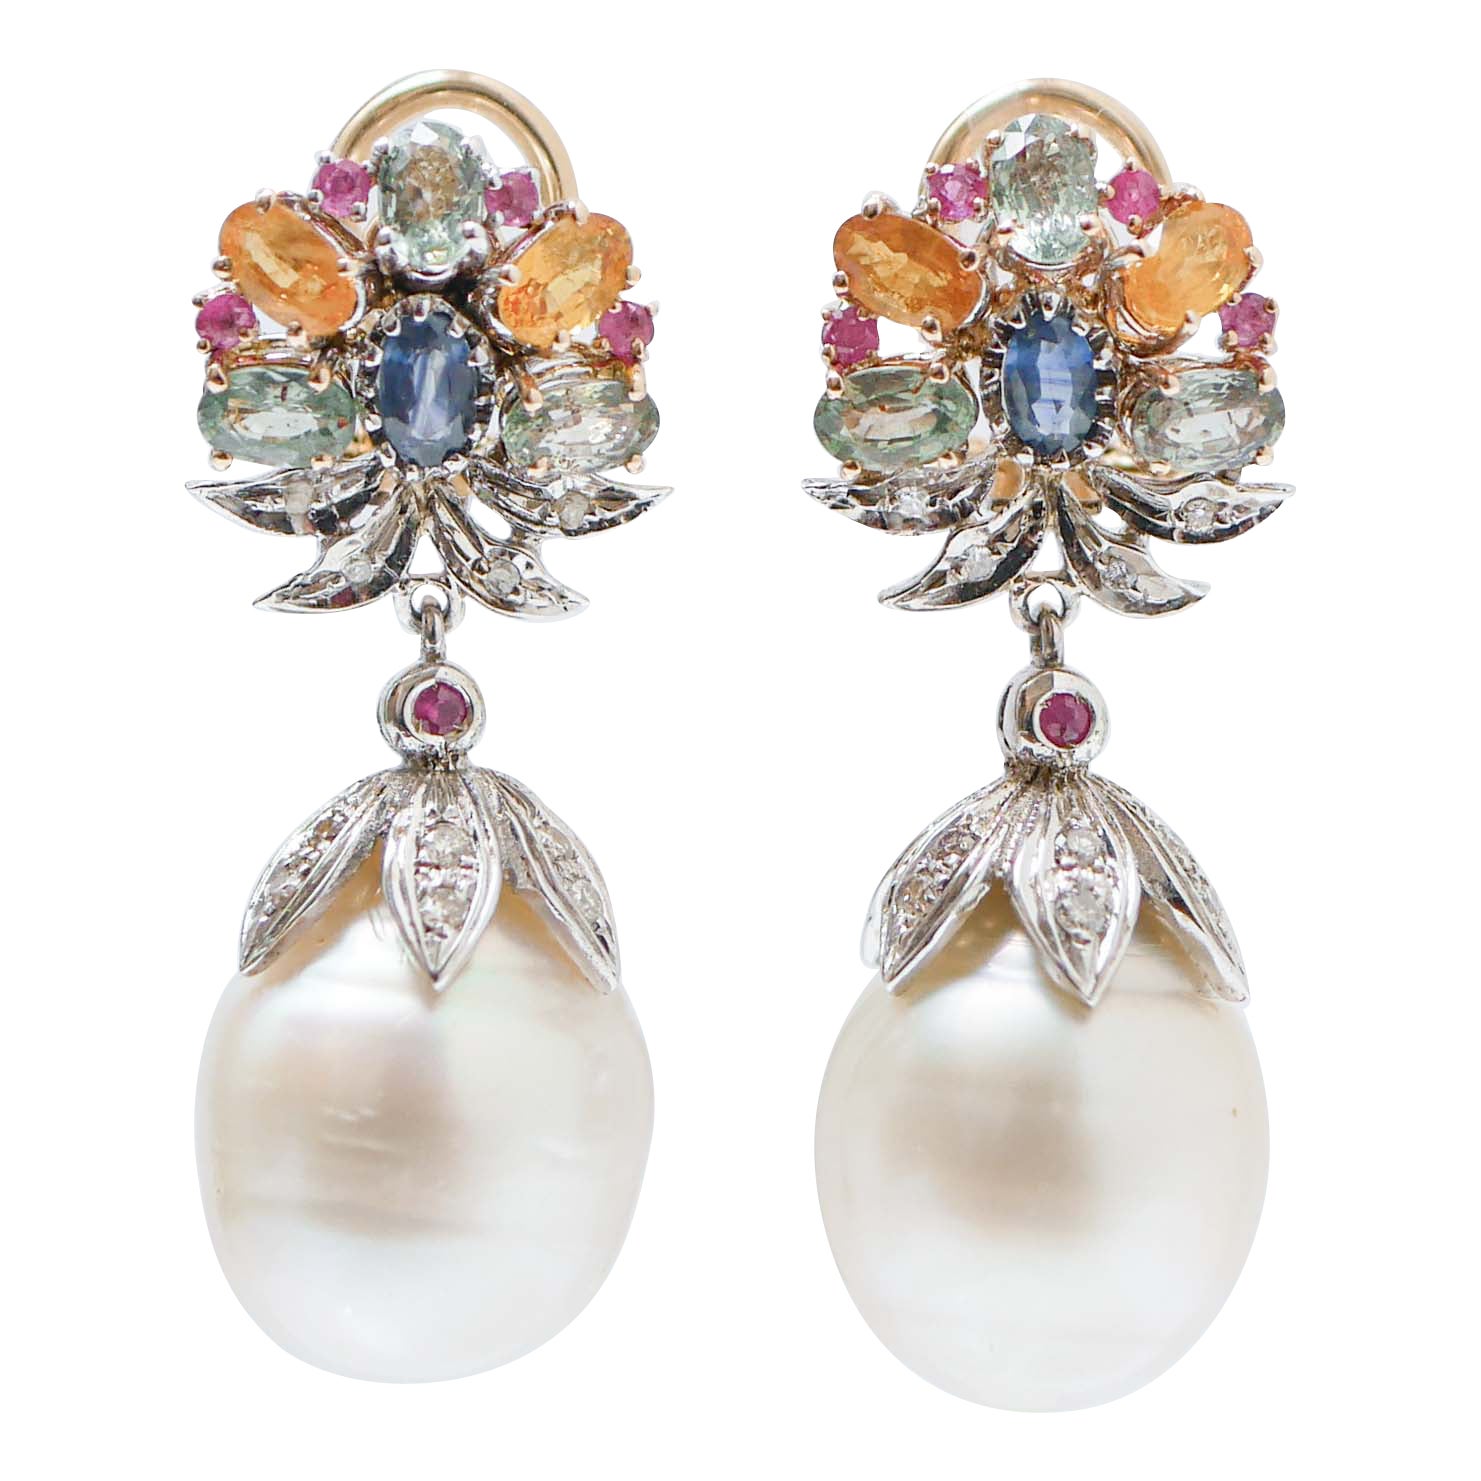 Boucles d'oreilles en or rose et blanc 14 carats, saphirs multicolores, rubis, diamants, perles